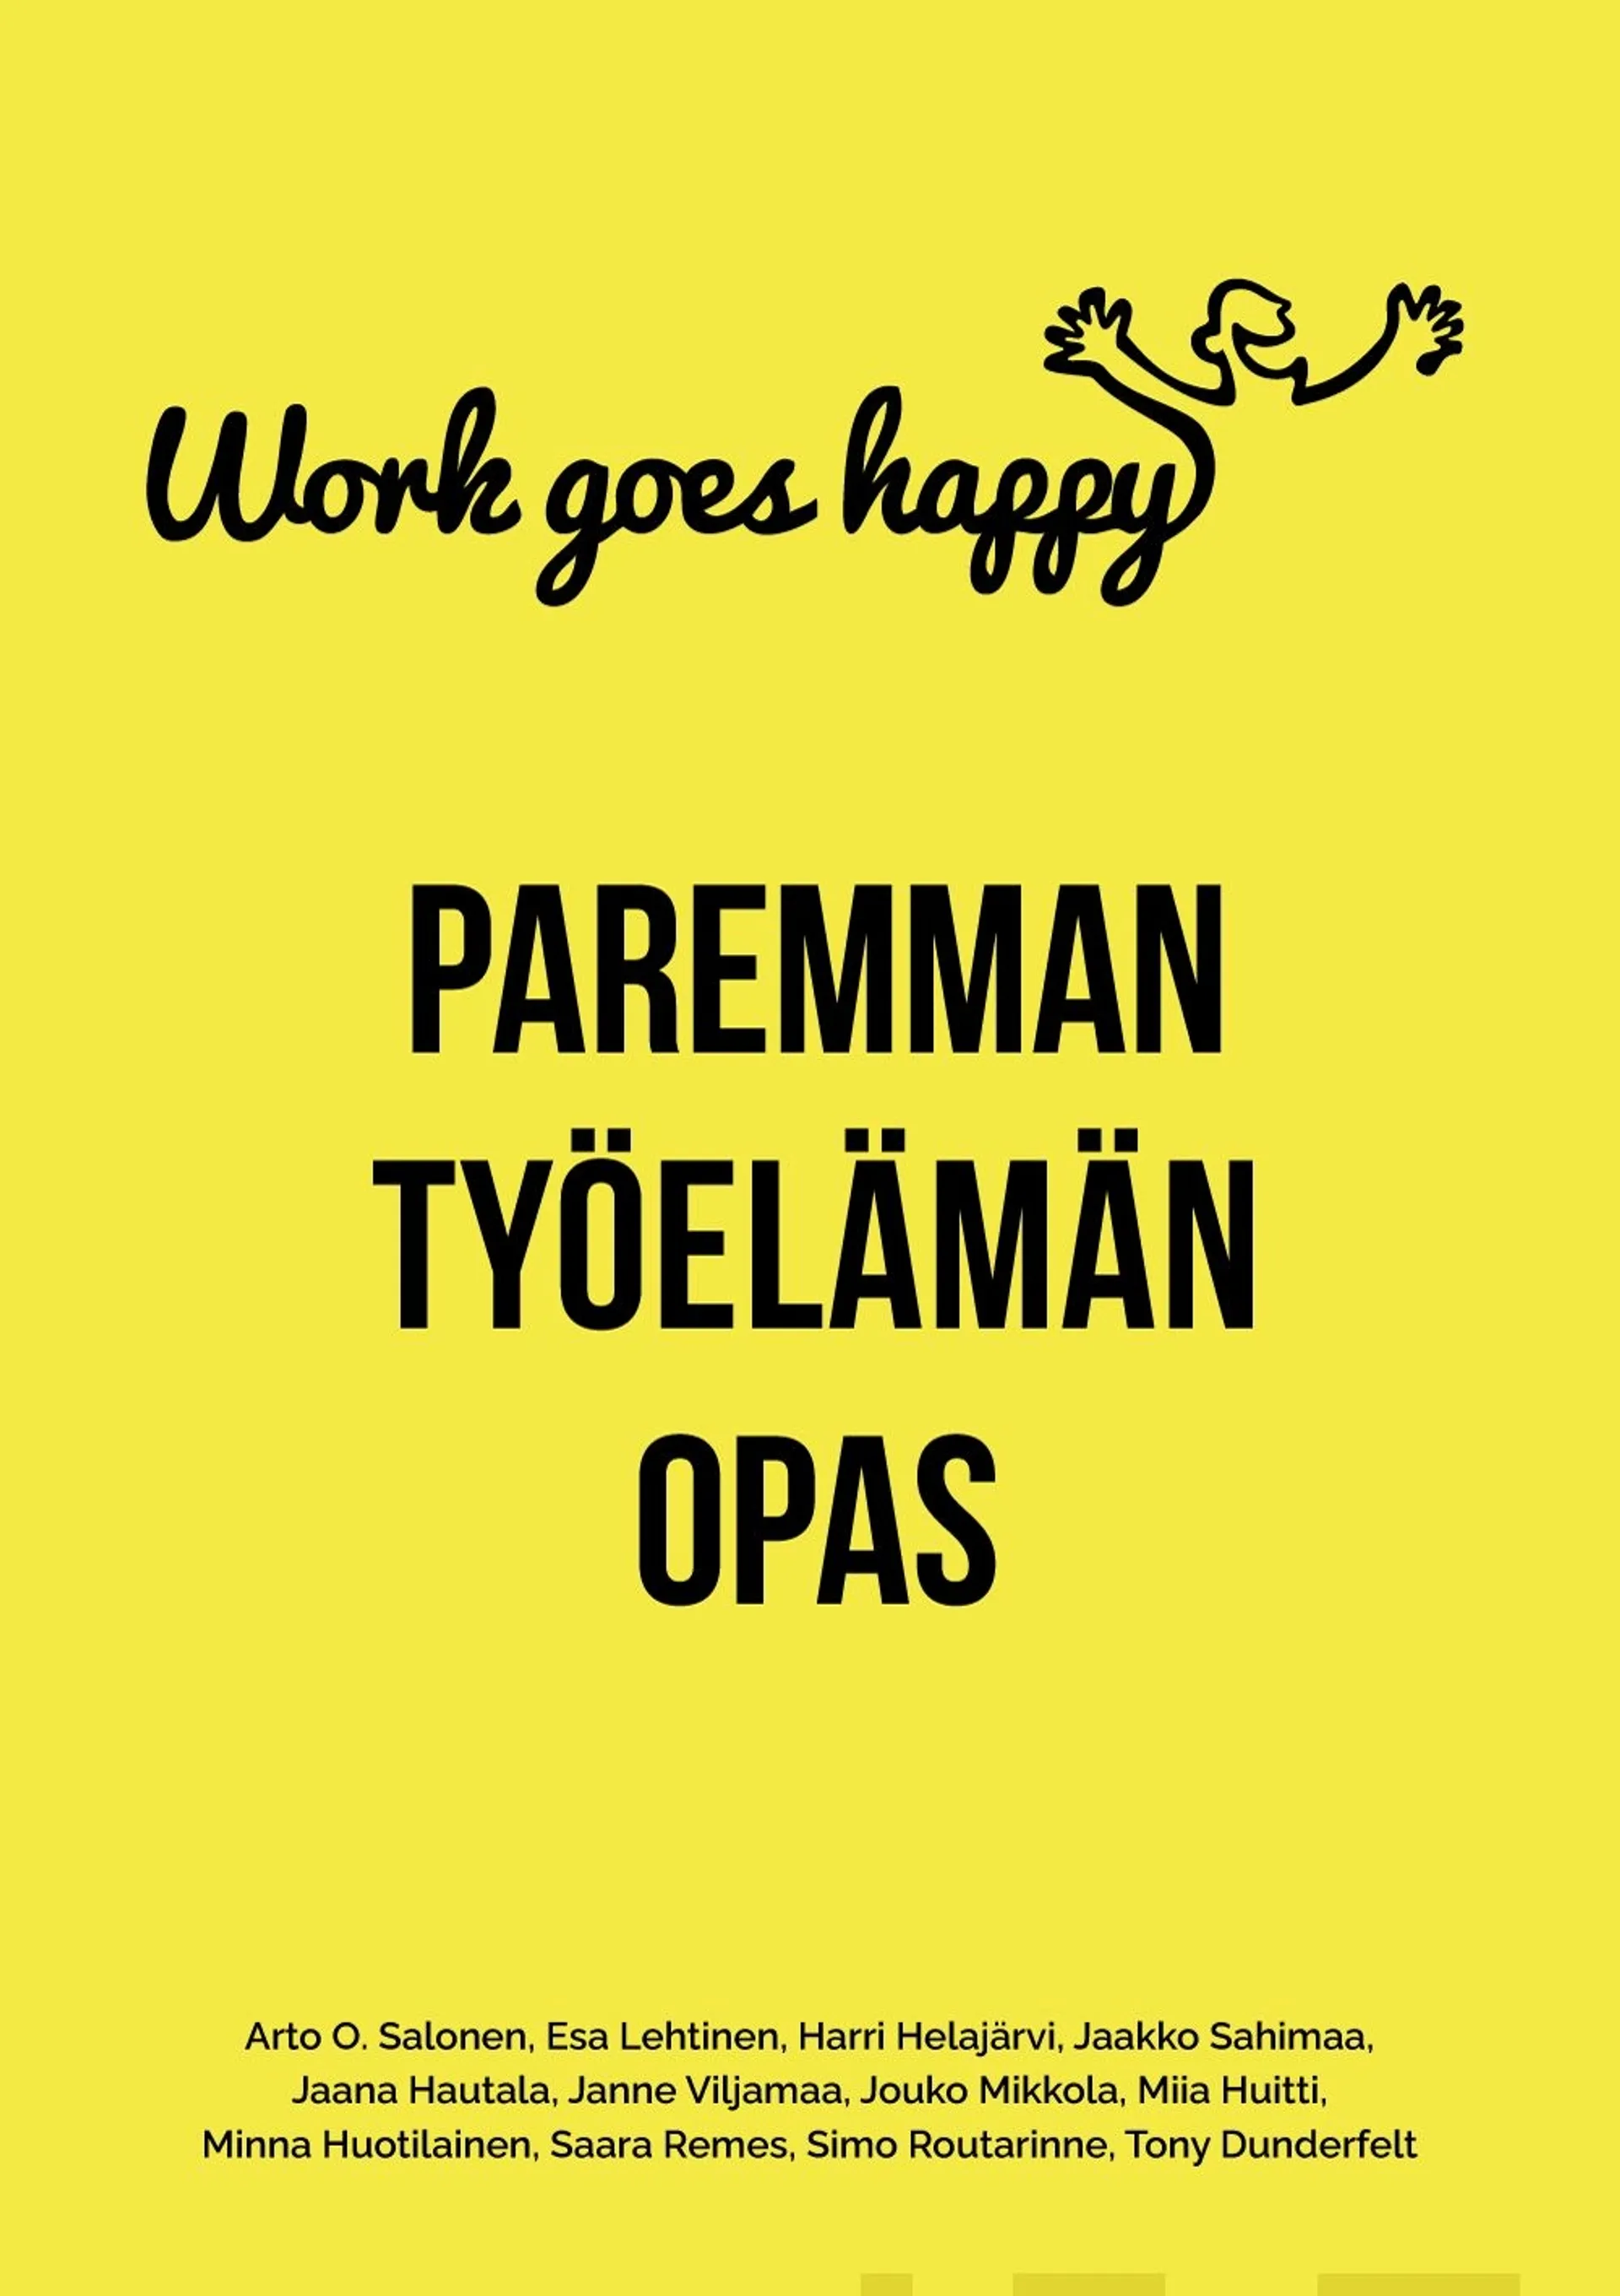 Work goes happy - Paremman työelämän opas